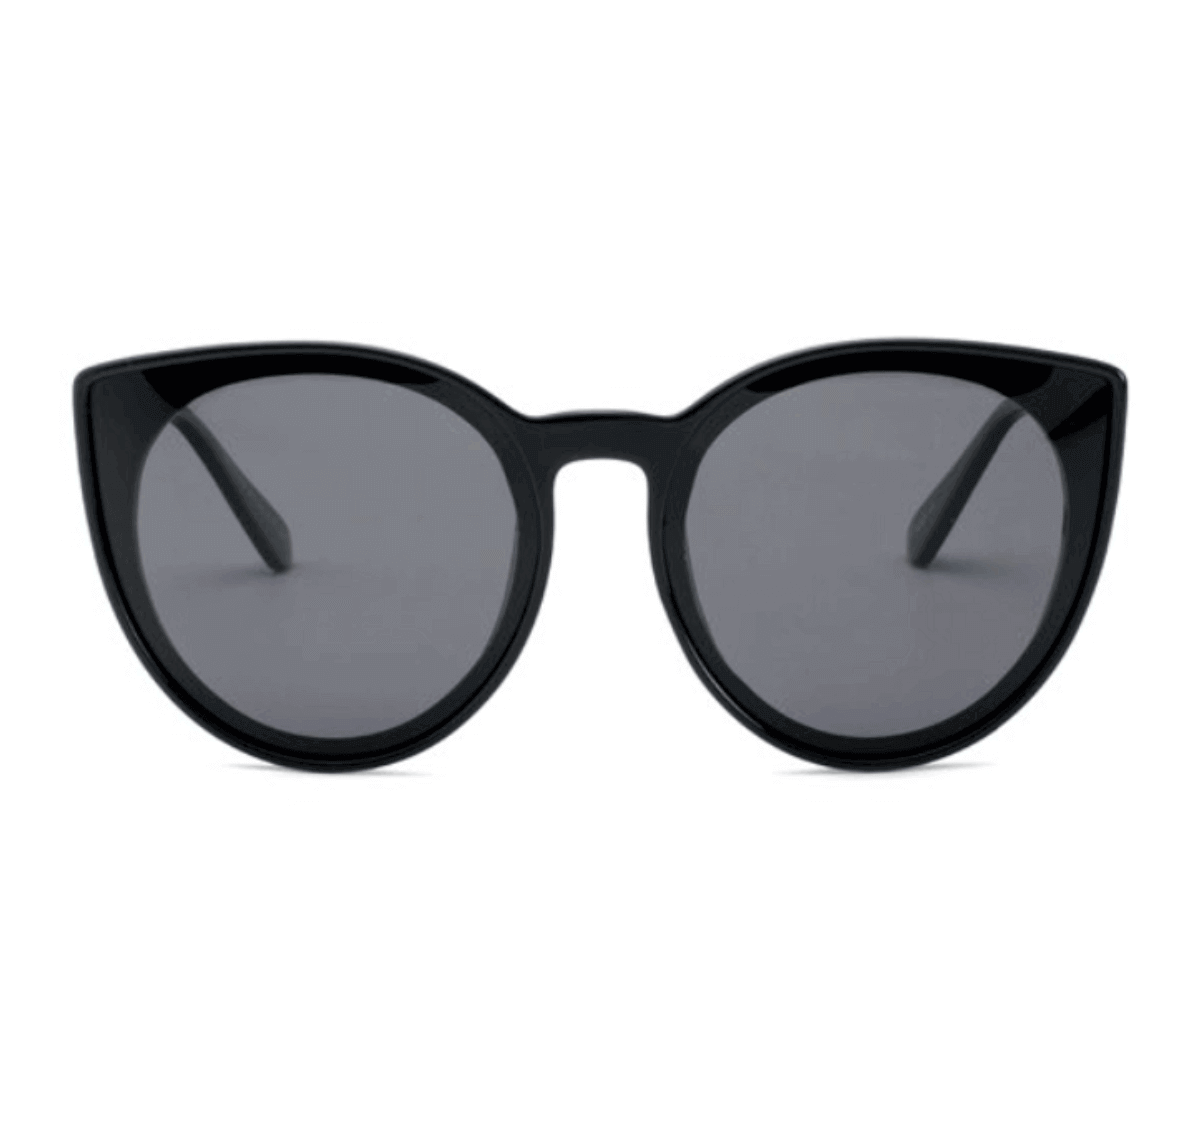 Custom Cat Eye Sunglasses from China - Custom Sunglasses Manufacturer - Custom Eyewear Manufacturers in China